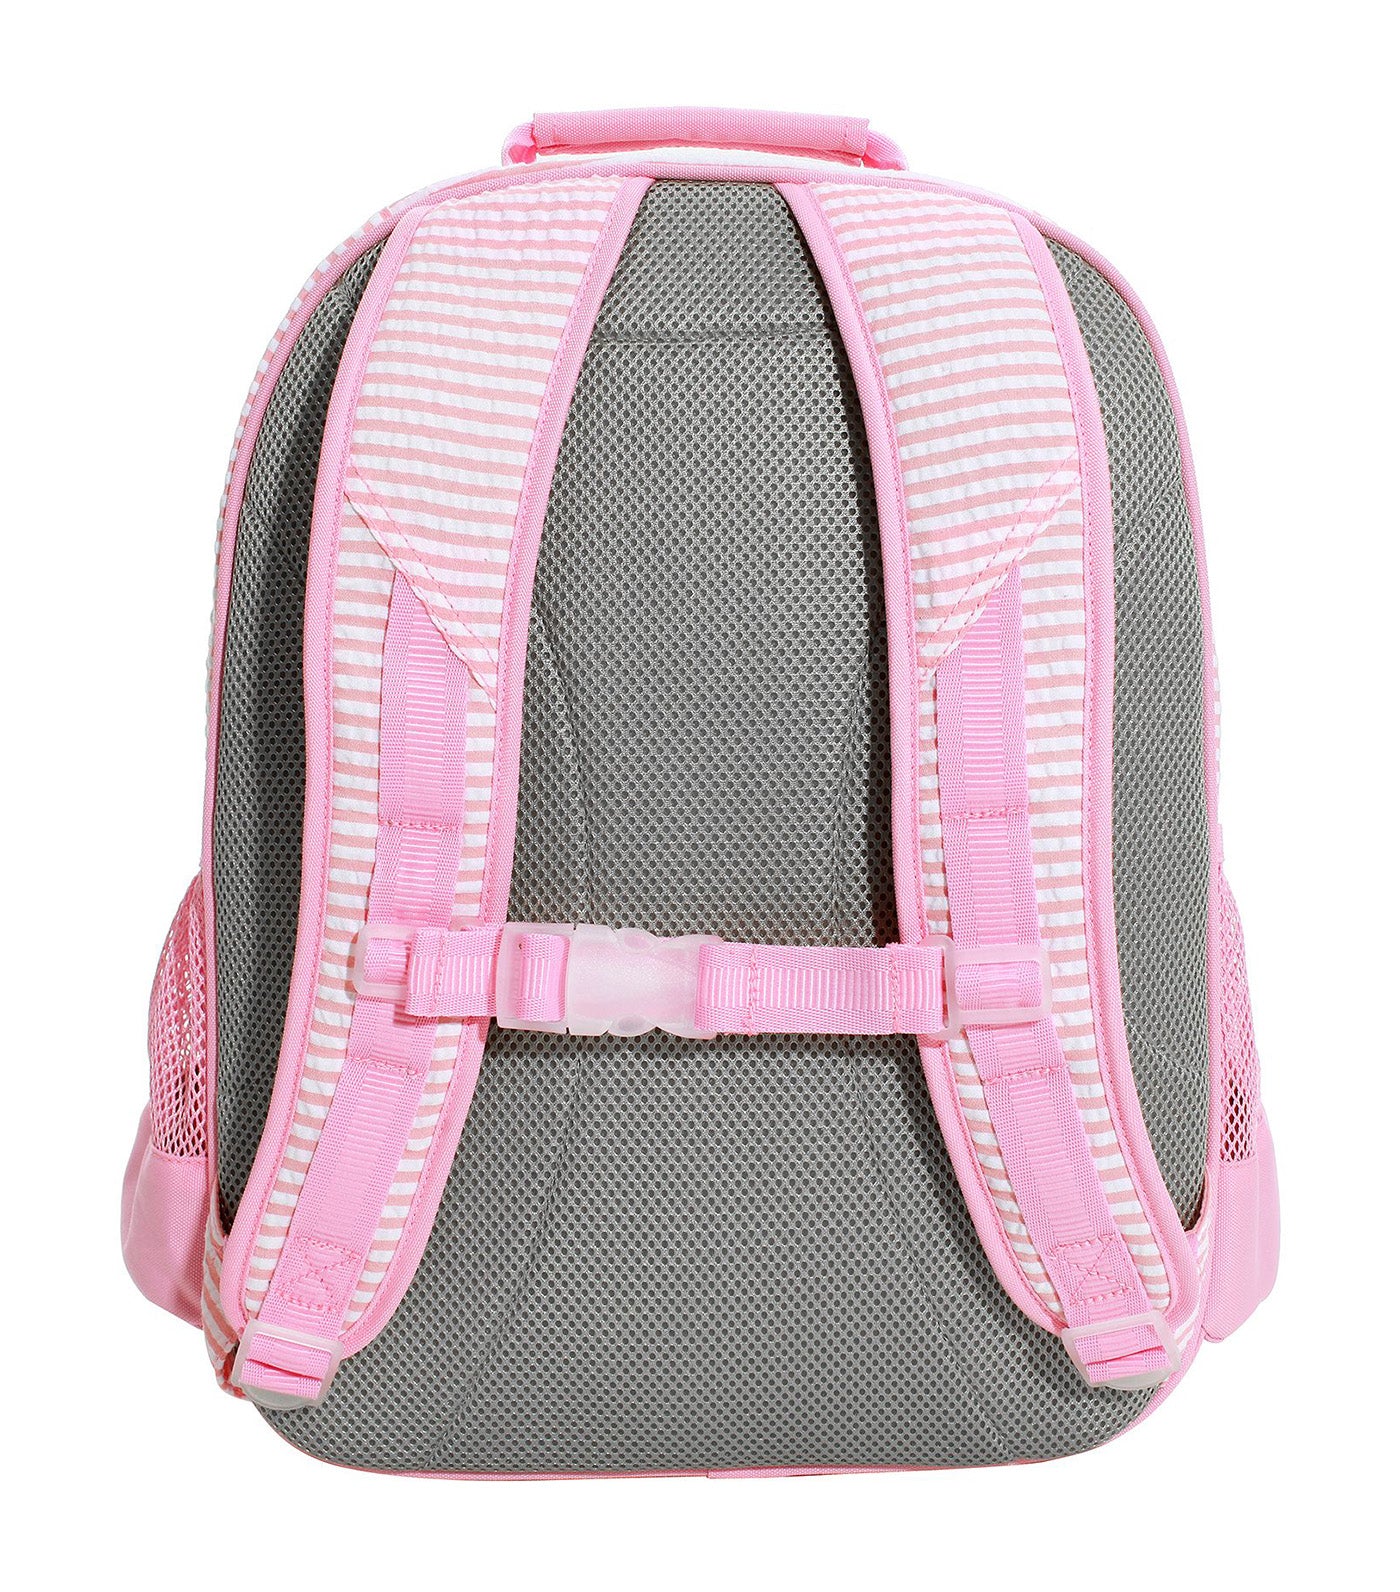 Mackenzie Bright Pink Seersucker Backpacks